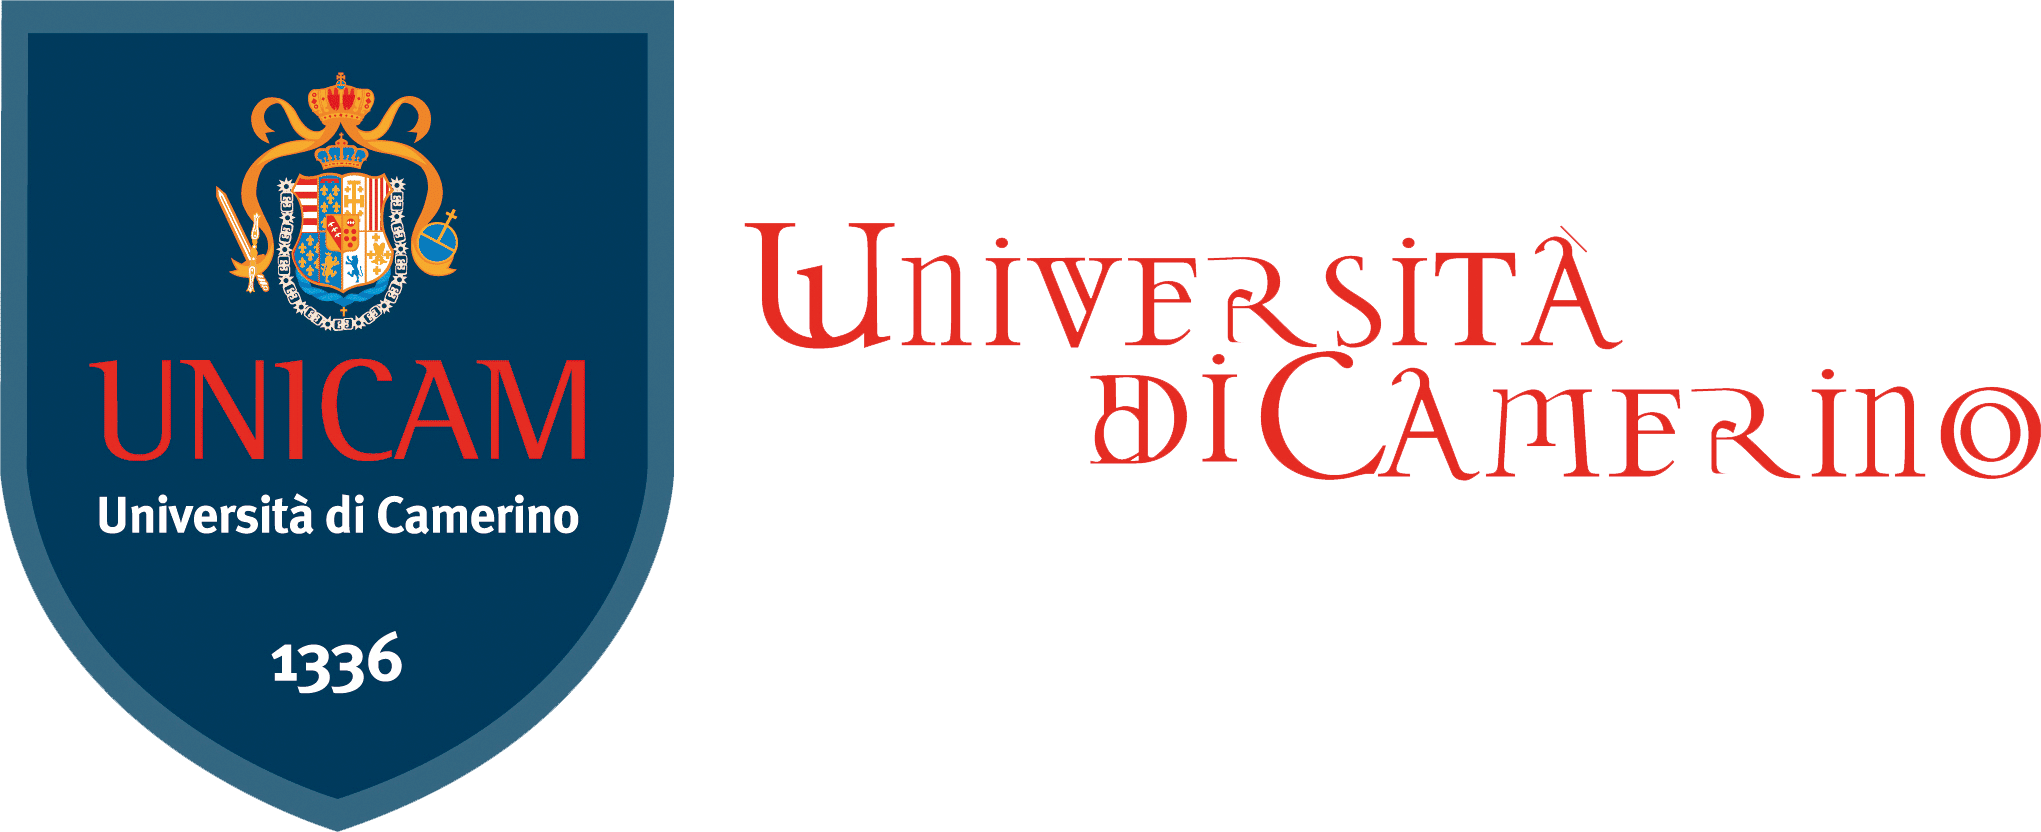 863_unicam-universita-di-camerino-1